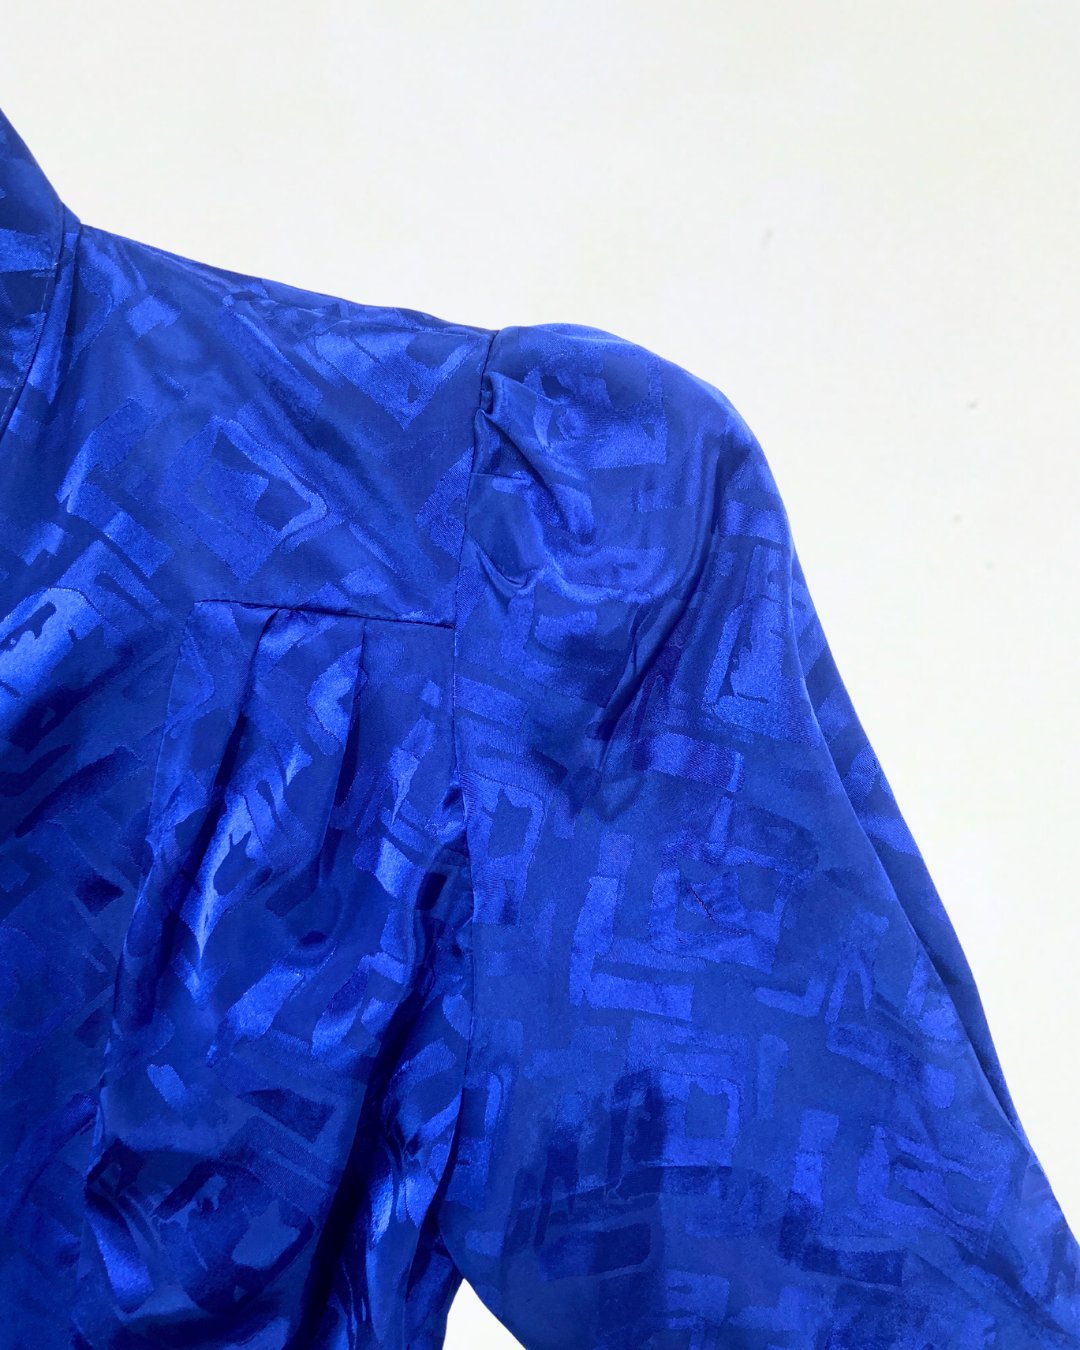 Cobalt Blue Textured Dress with Belt